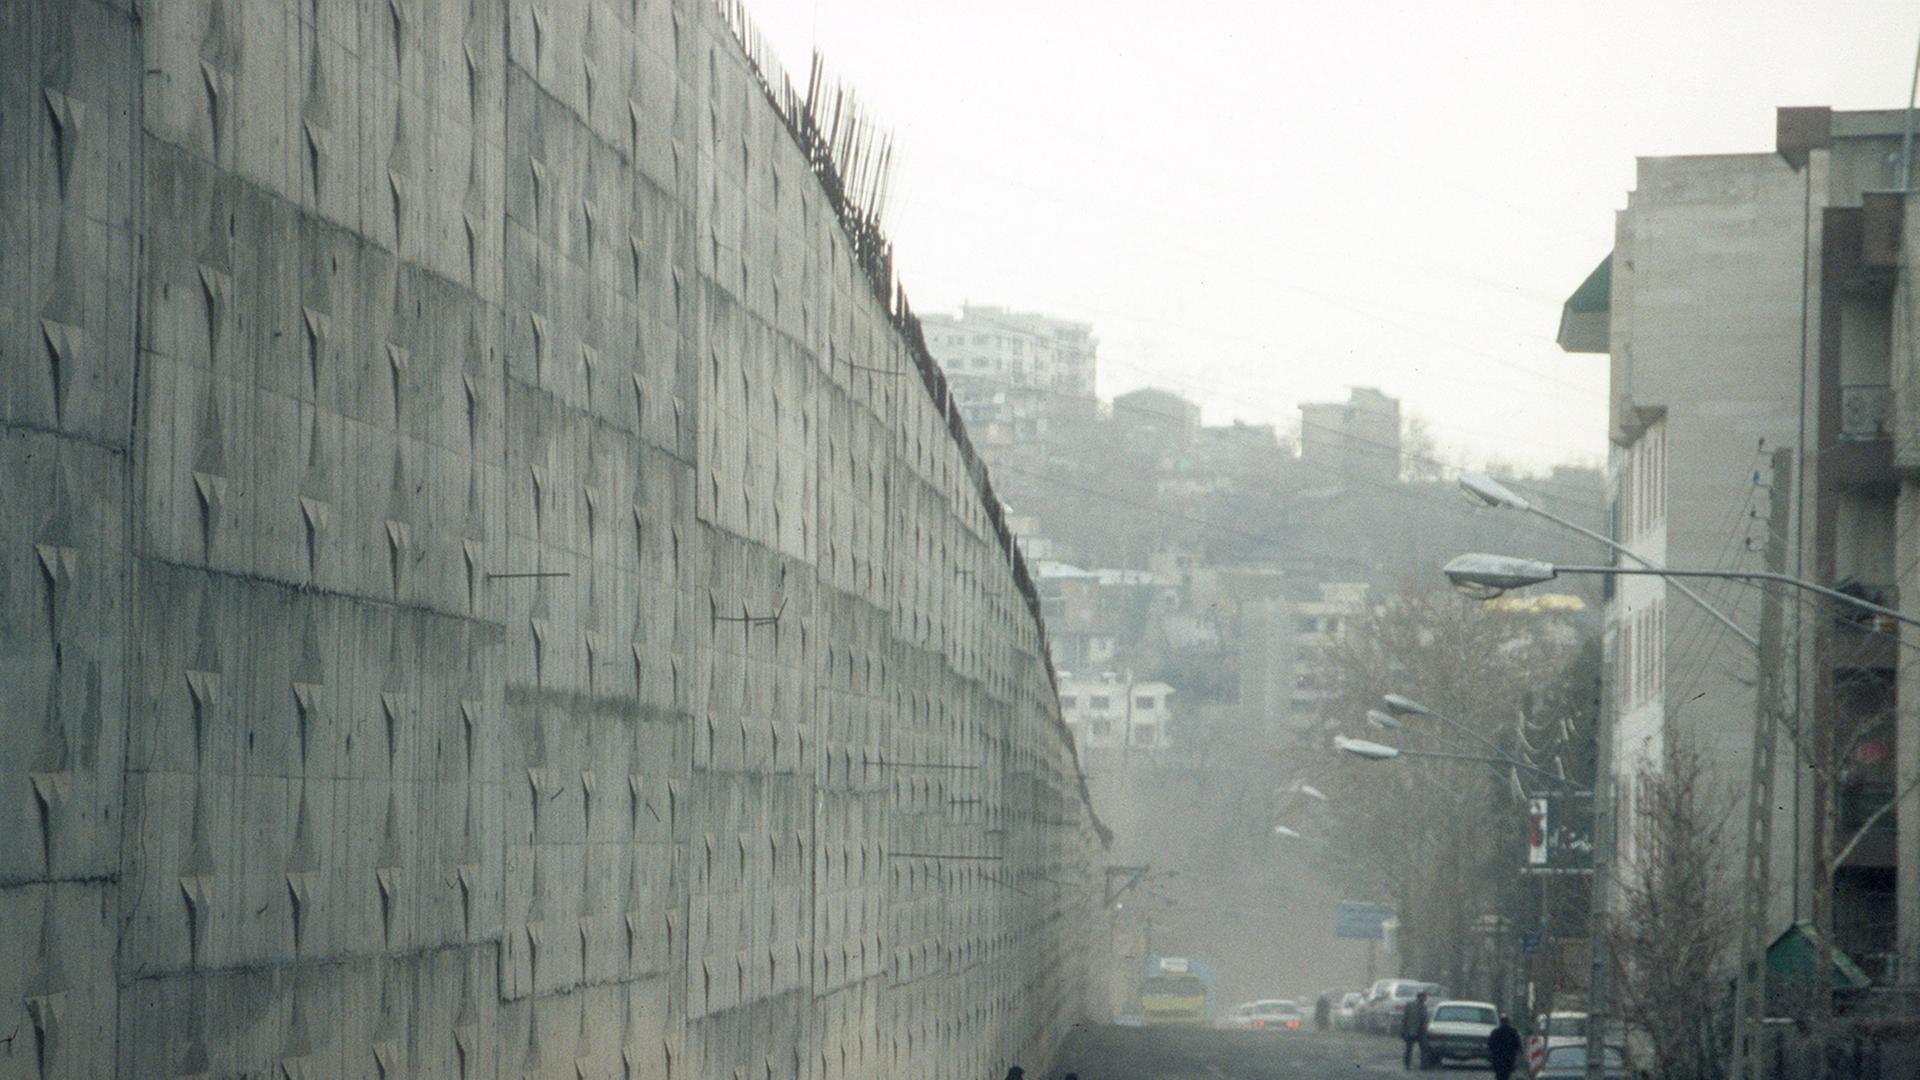 Eines der seltenen Bilder vom Evin-Gefängnis in Teheran, aufgenommen 2006, zu sehen ist eine hohe Betonmauer neben einer Straße